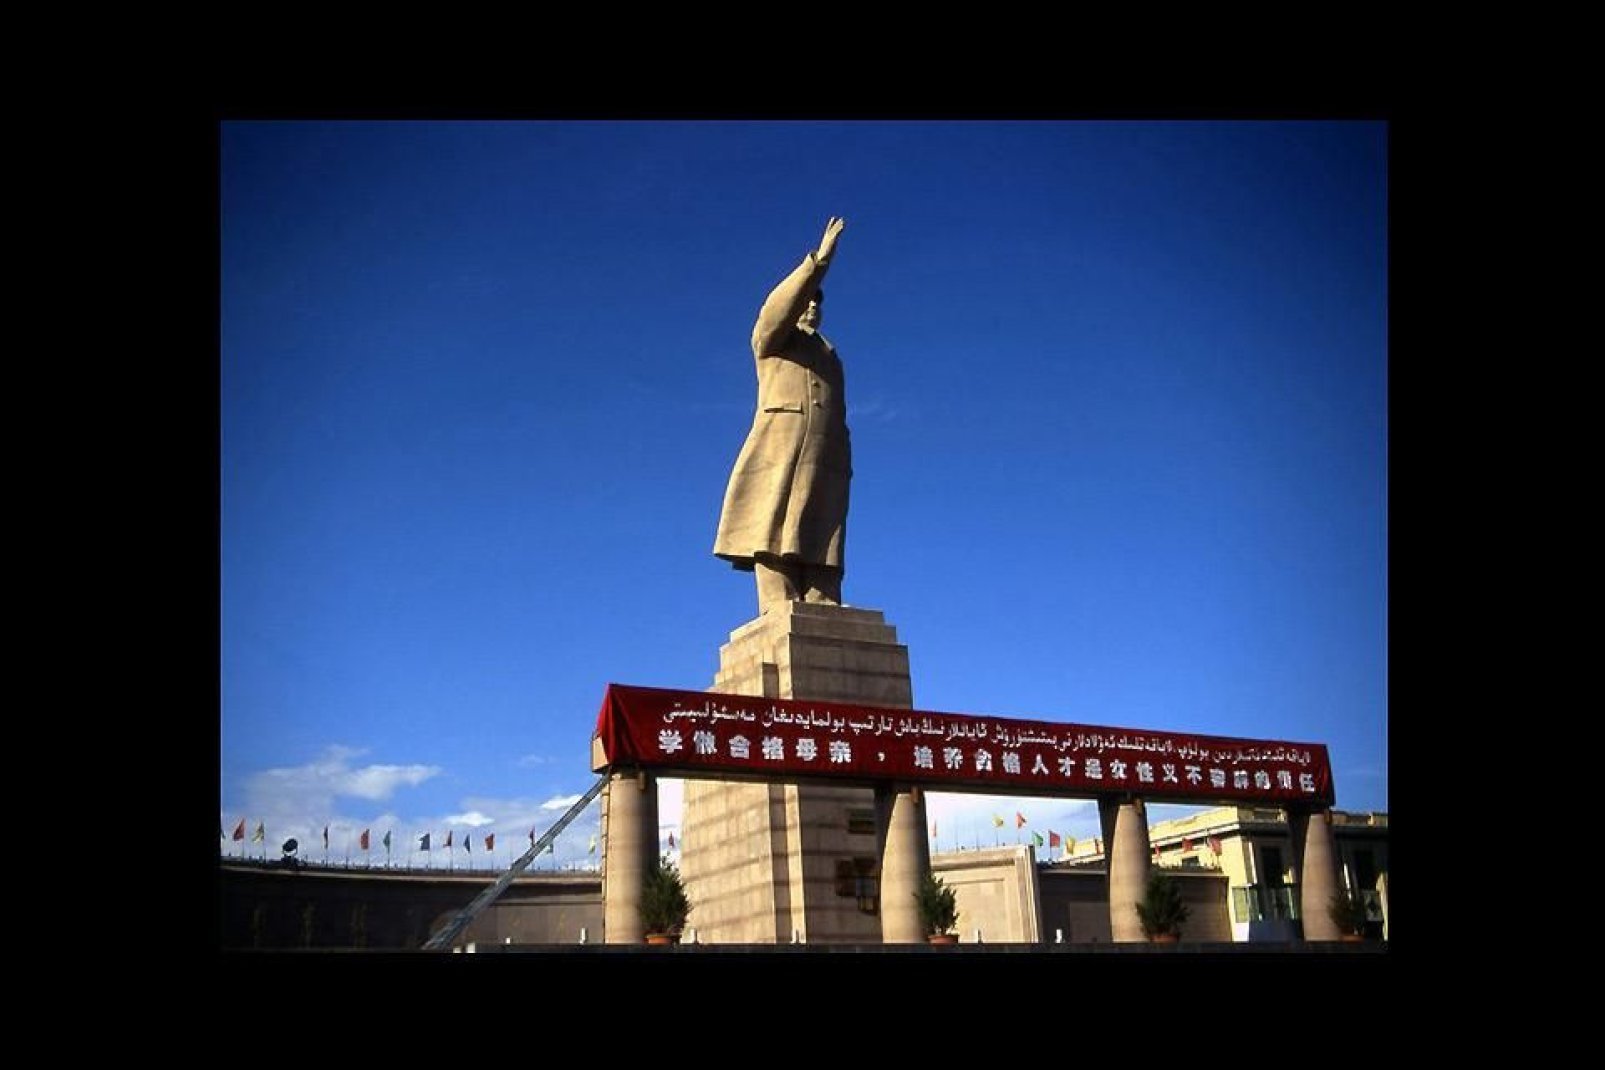 Diese 18 m hohe Statue wurde zu Ehren von Mao Tse-Tung aufgestellt und ist eine der letzten dieser Art in China.